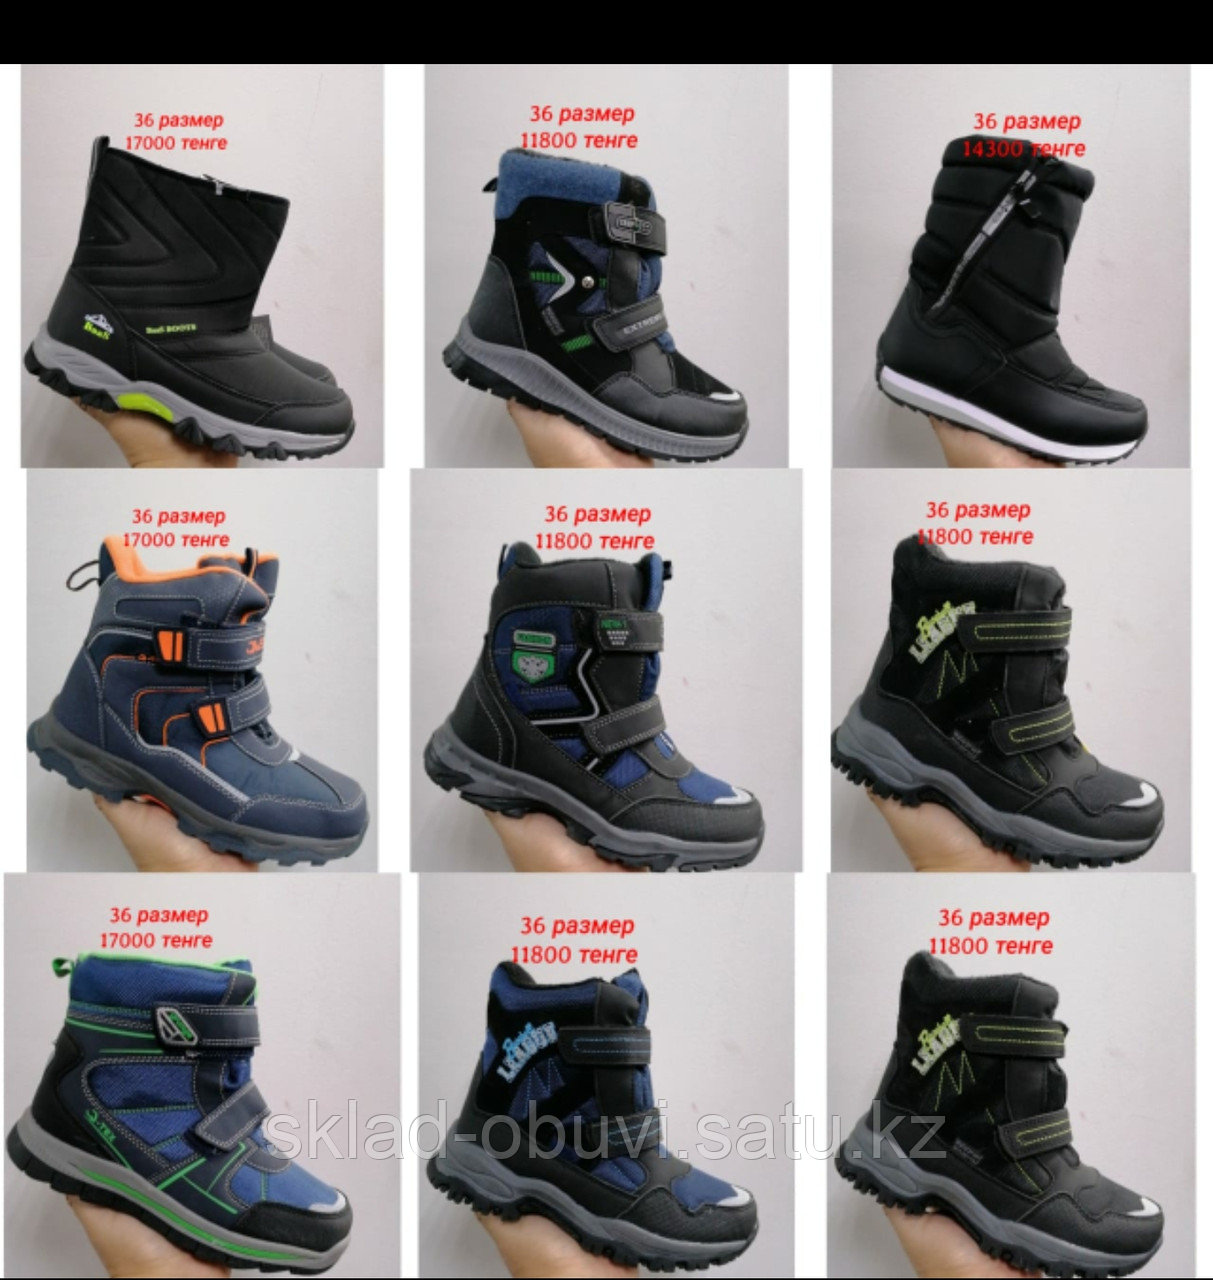 Качественная детская зимняя обувь (id 85167548), купить в Казахстане, цена  на Satu.kz